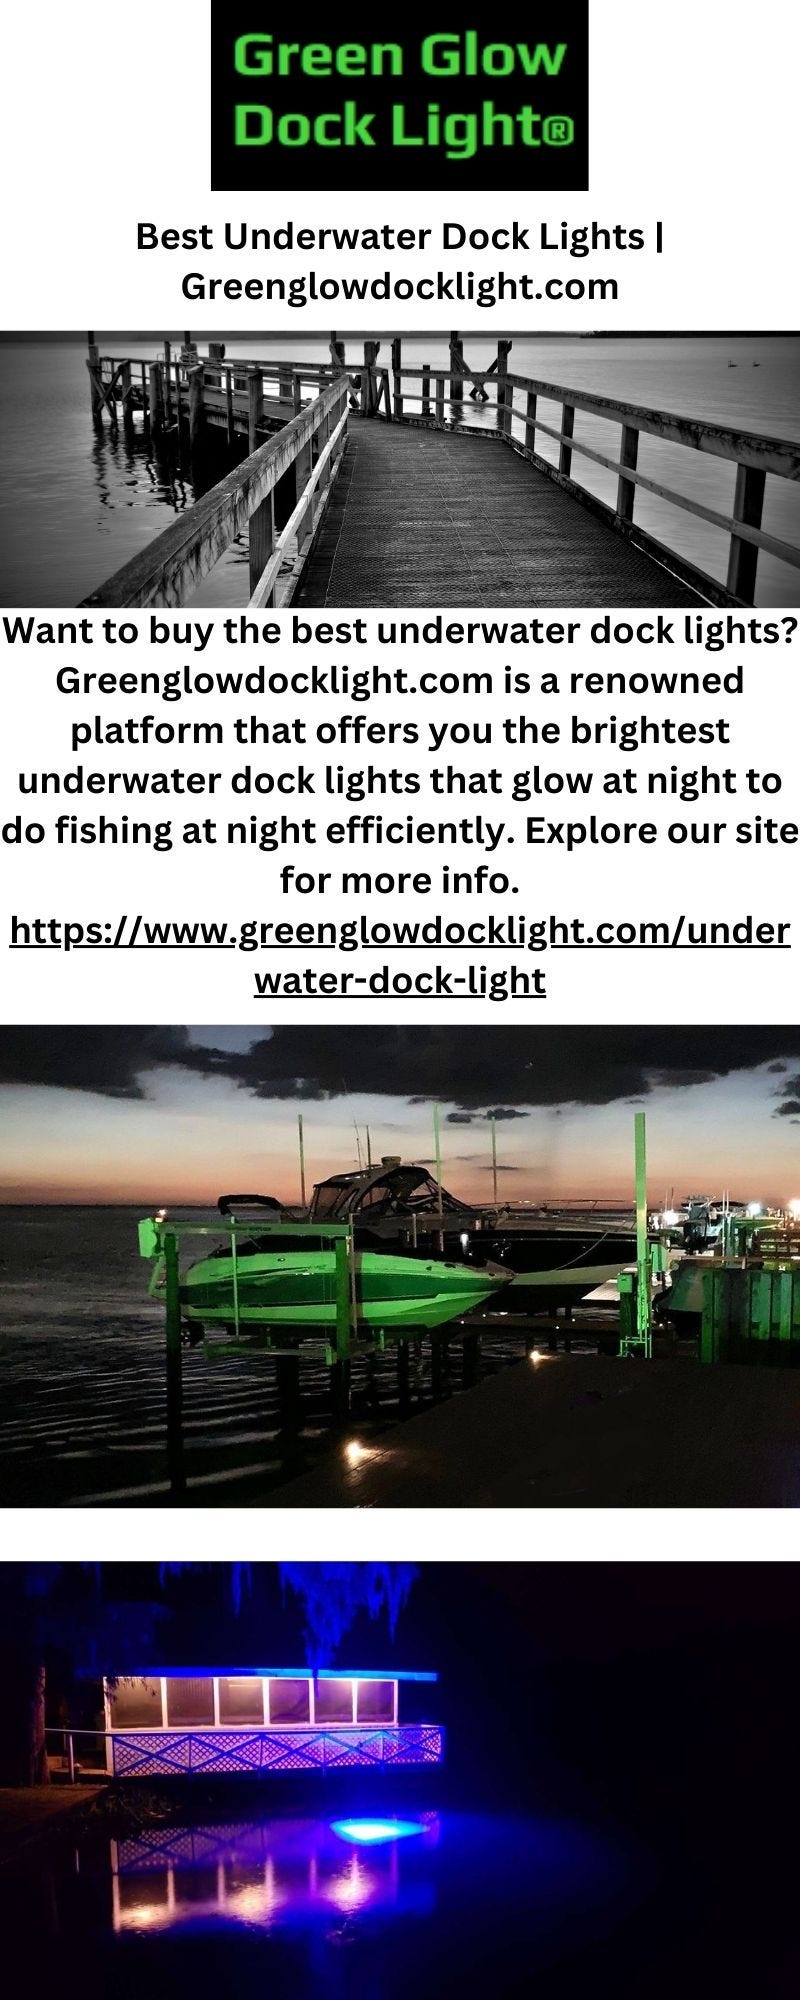 Best Underwater Dock Lights  Greenglowdocklight.com - Green Glow